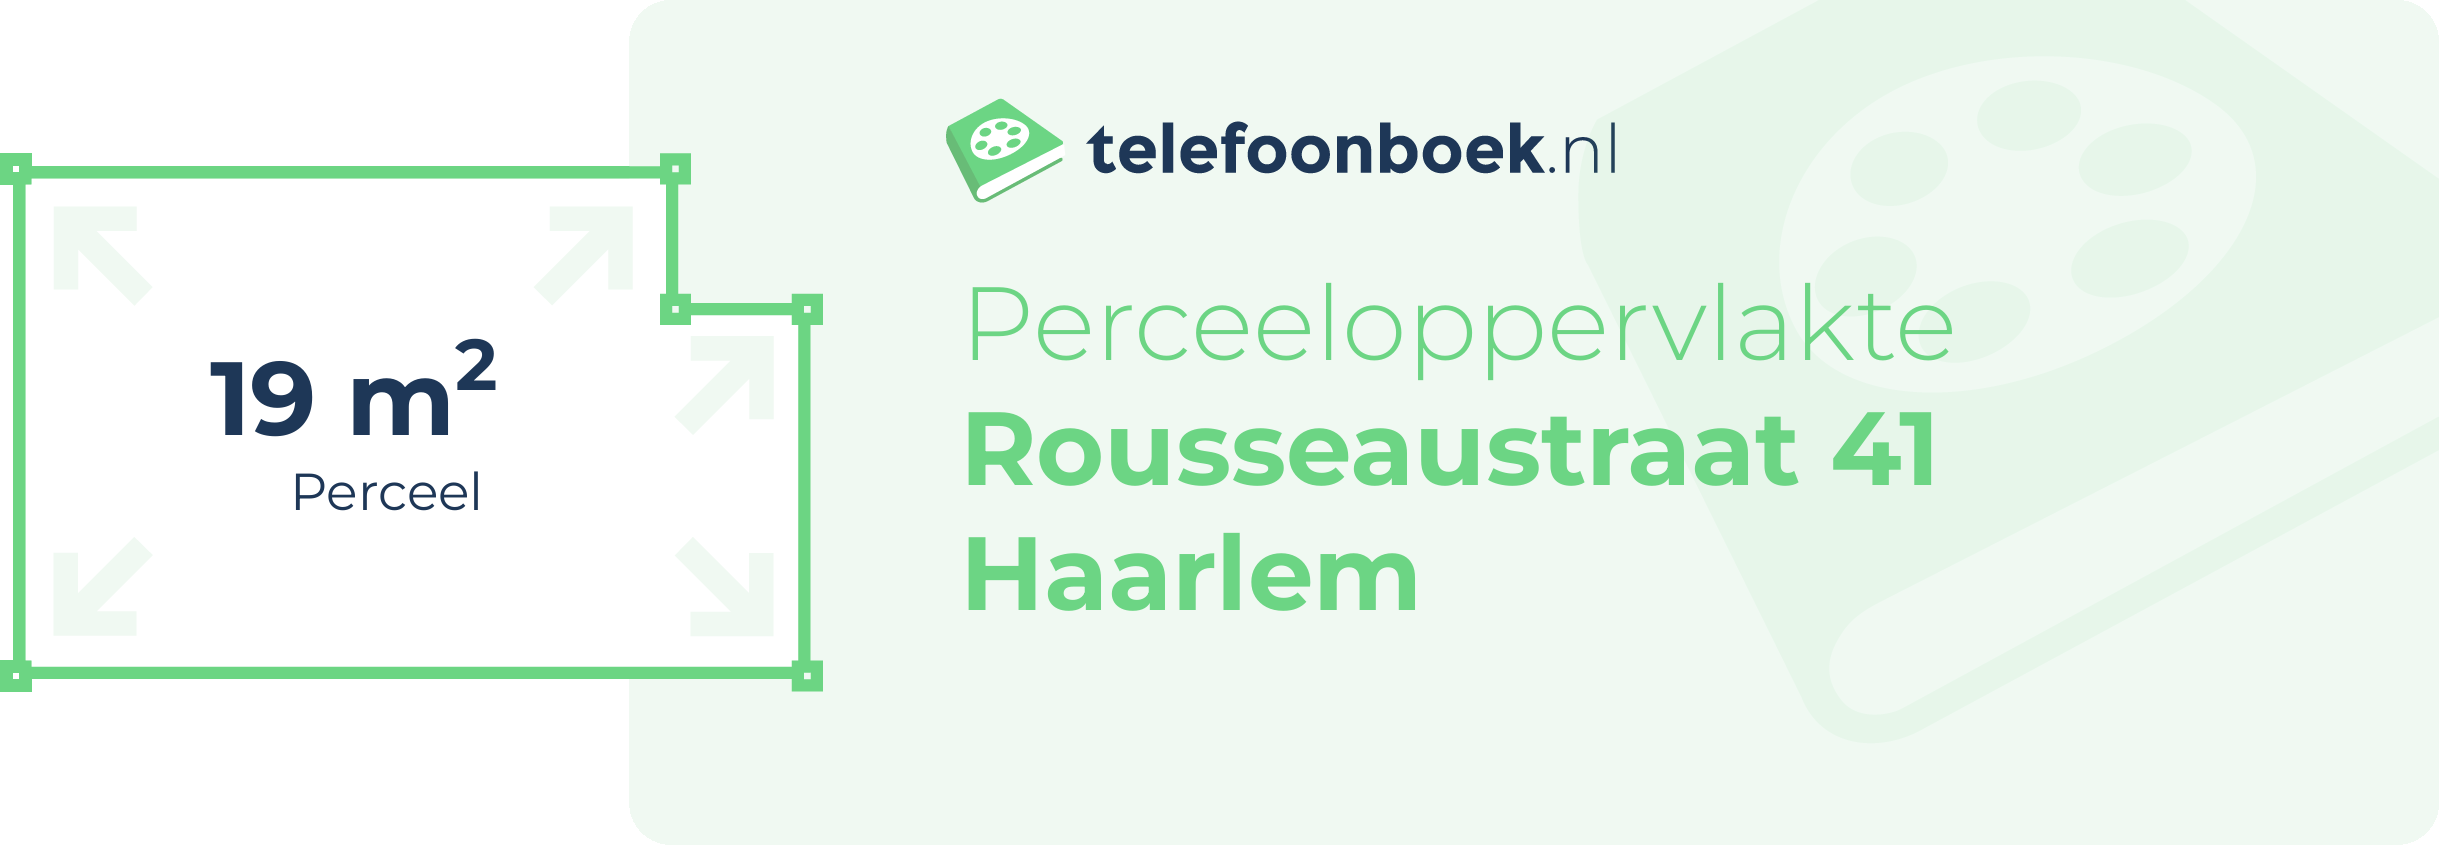 Perceeloppervlakte Rousseaustraat 41 Haarlem